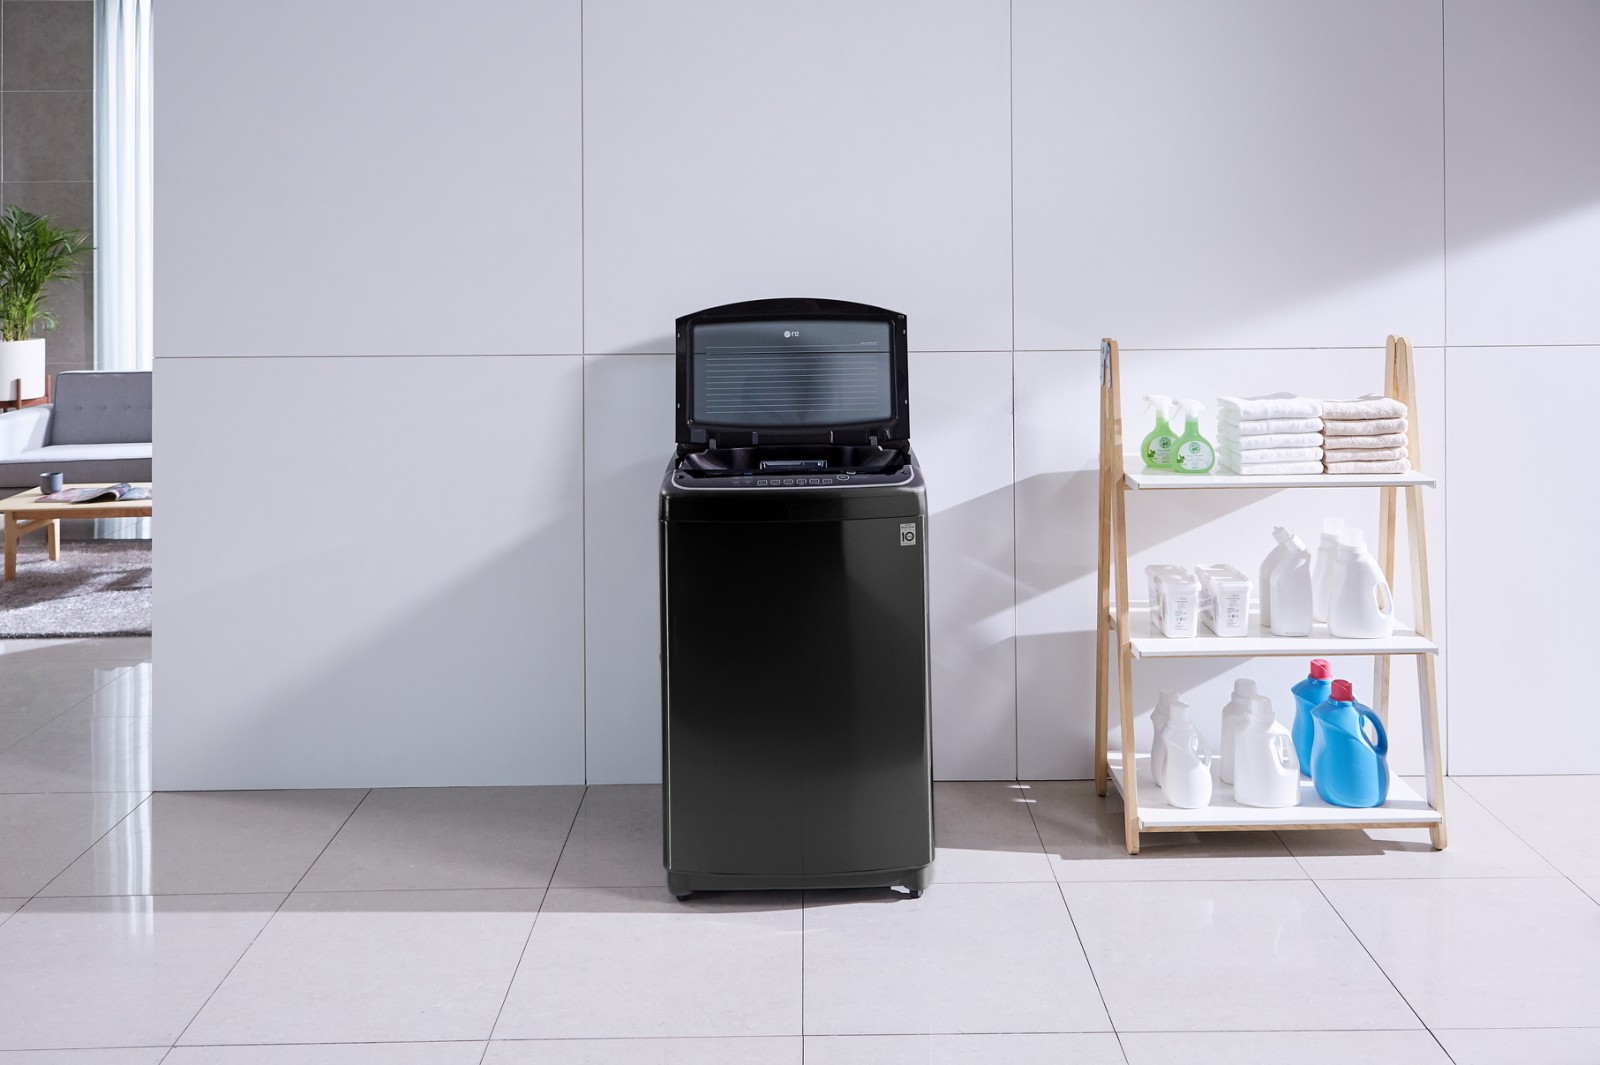 LG ra mắt máy giặt lồng đứng hơi nước DD mang tới trải nghiệm giặt giũ hoàn hảo